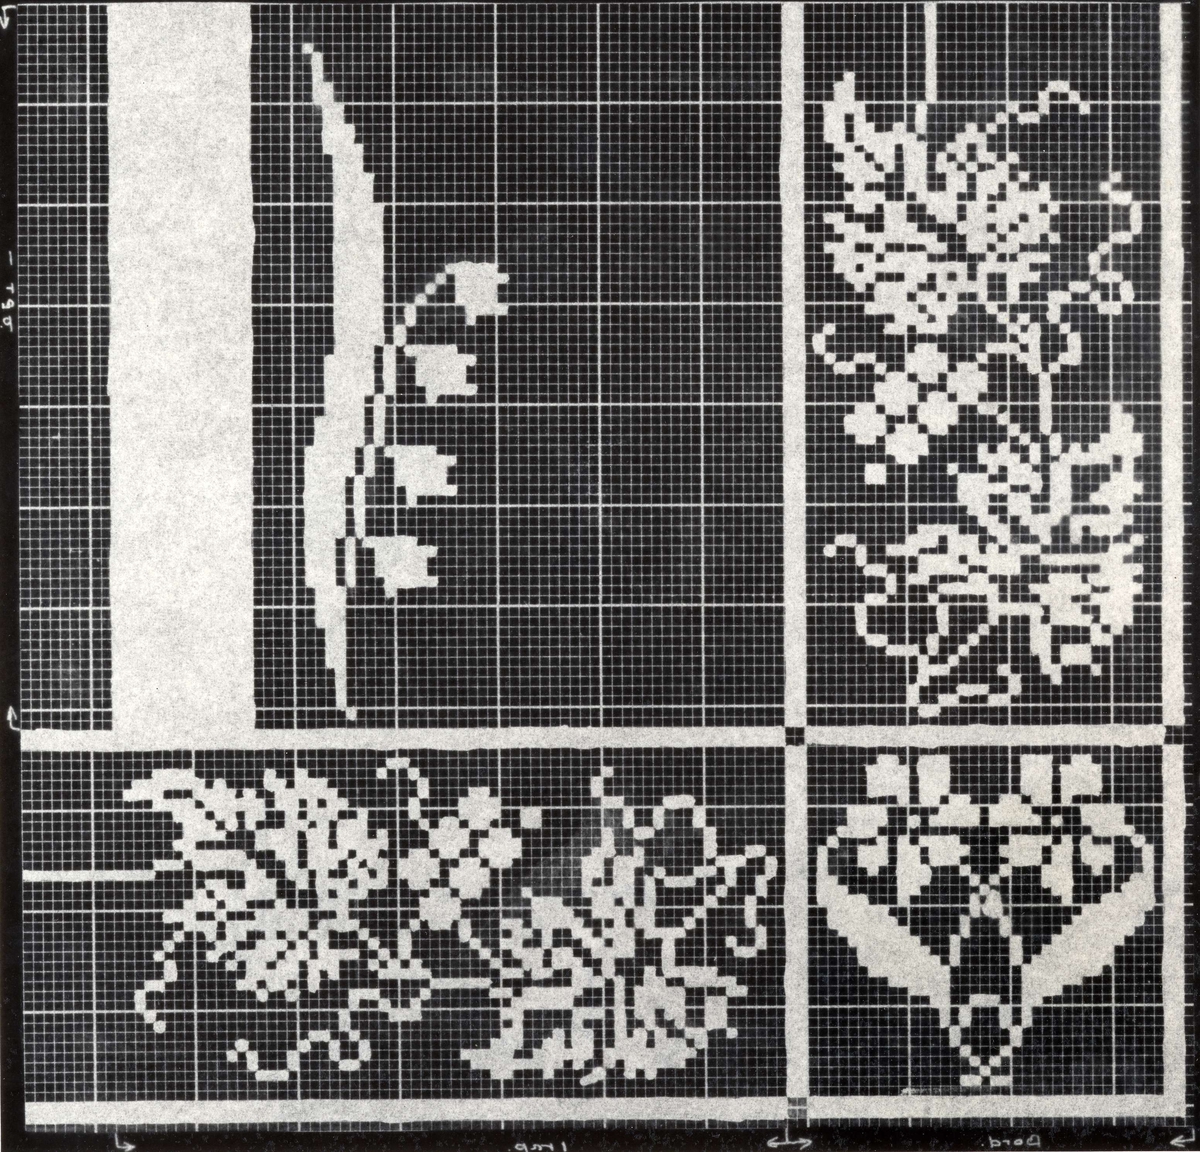 Detalj av damaskduk fra Kvinnherad, Hordaland. Uttegning av mønster.